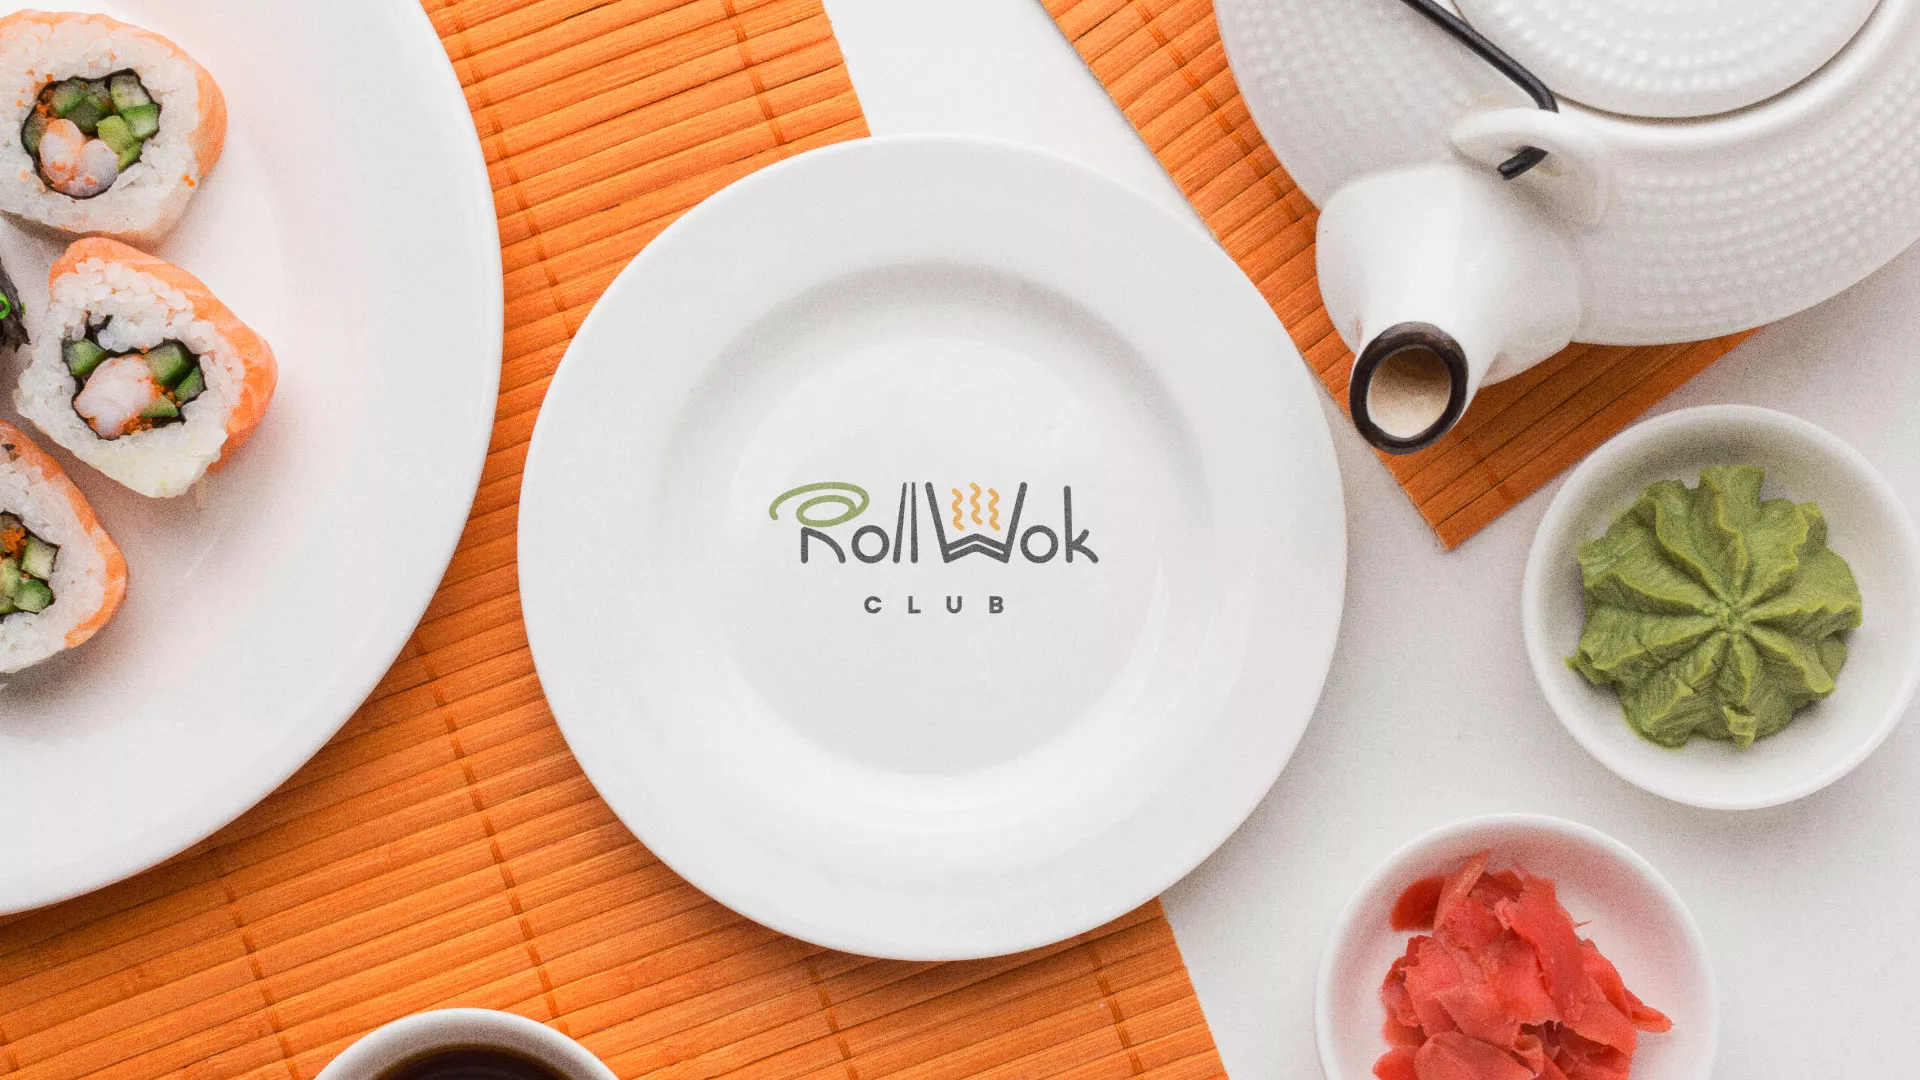 Разработка логотипа и фирменного стиля суши-бара «Roll Wok Club» в Брянске